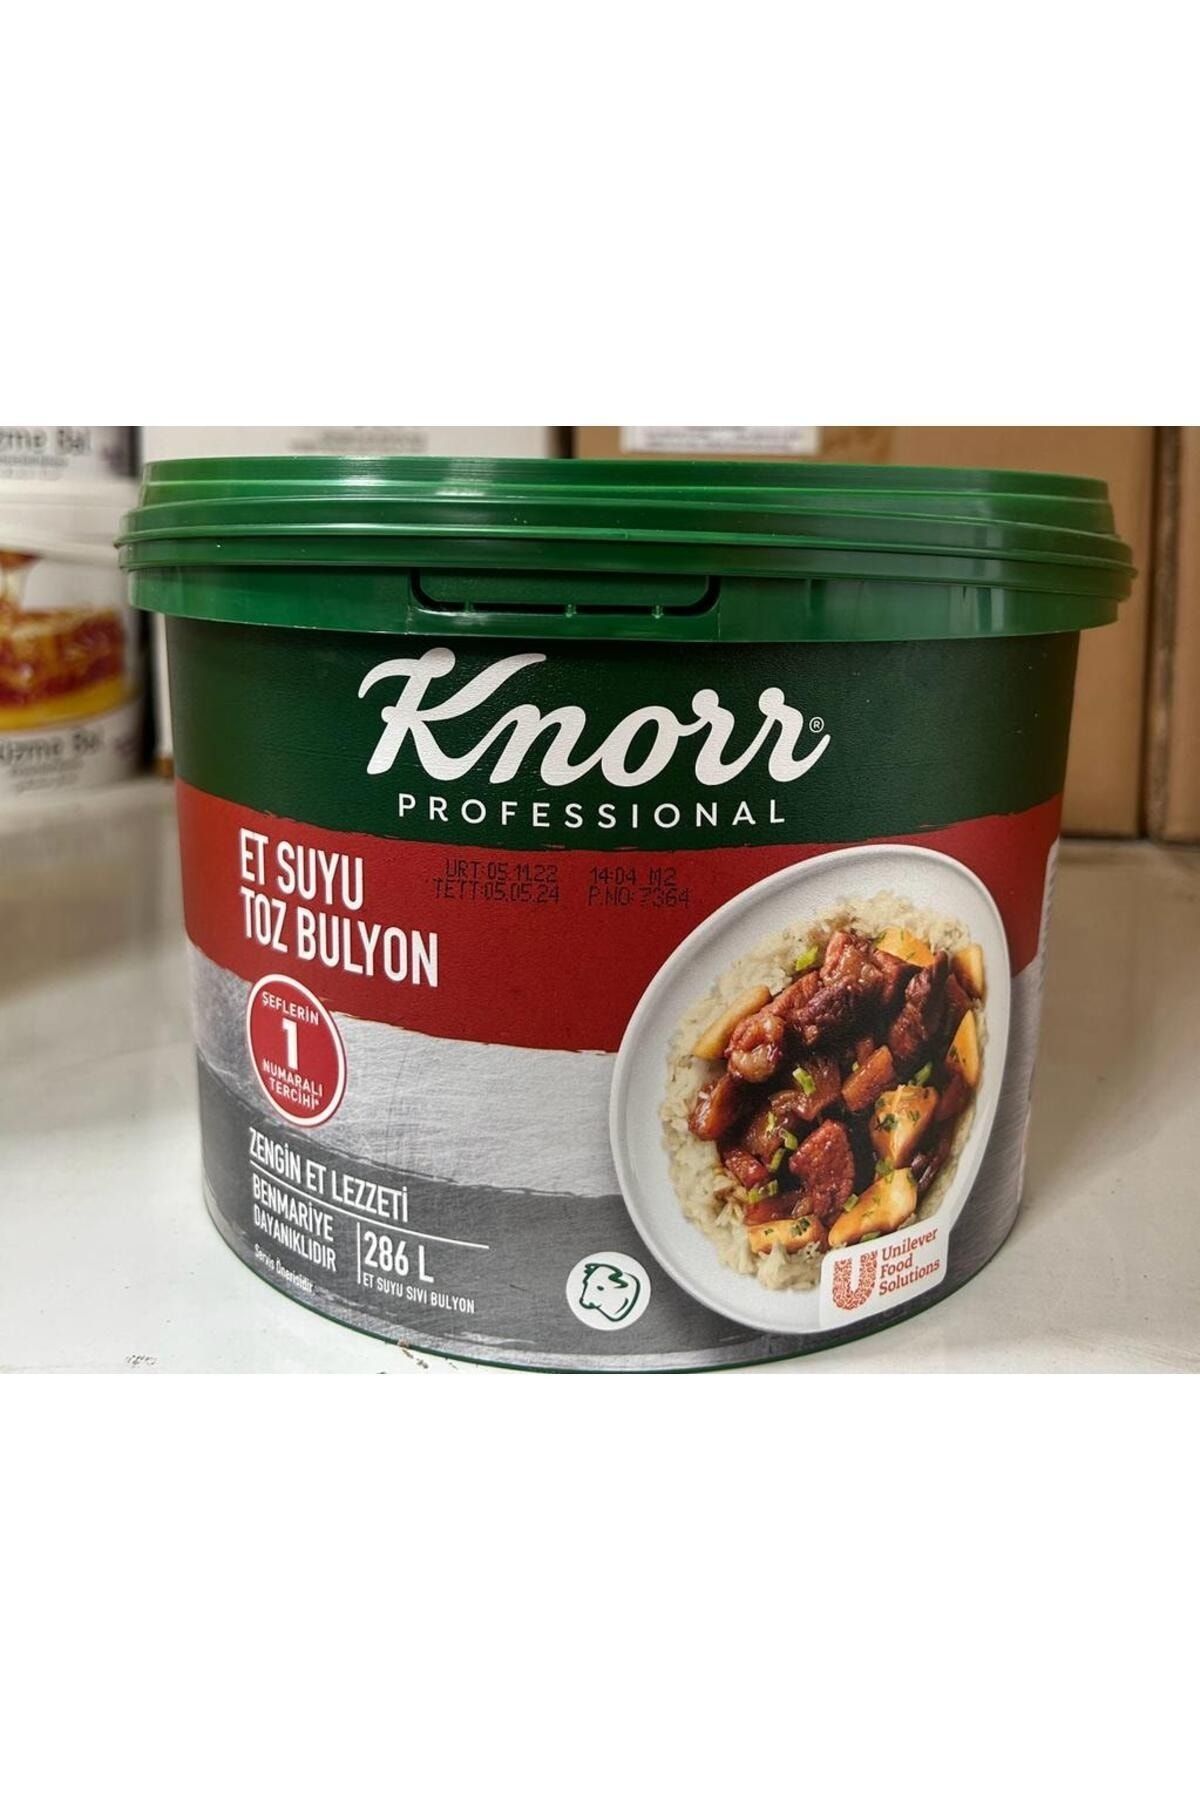 Knorr ET BULYON 5KG